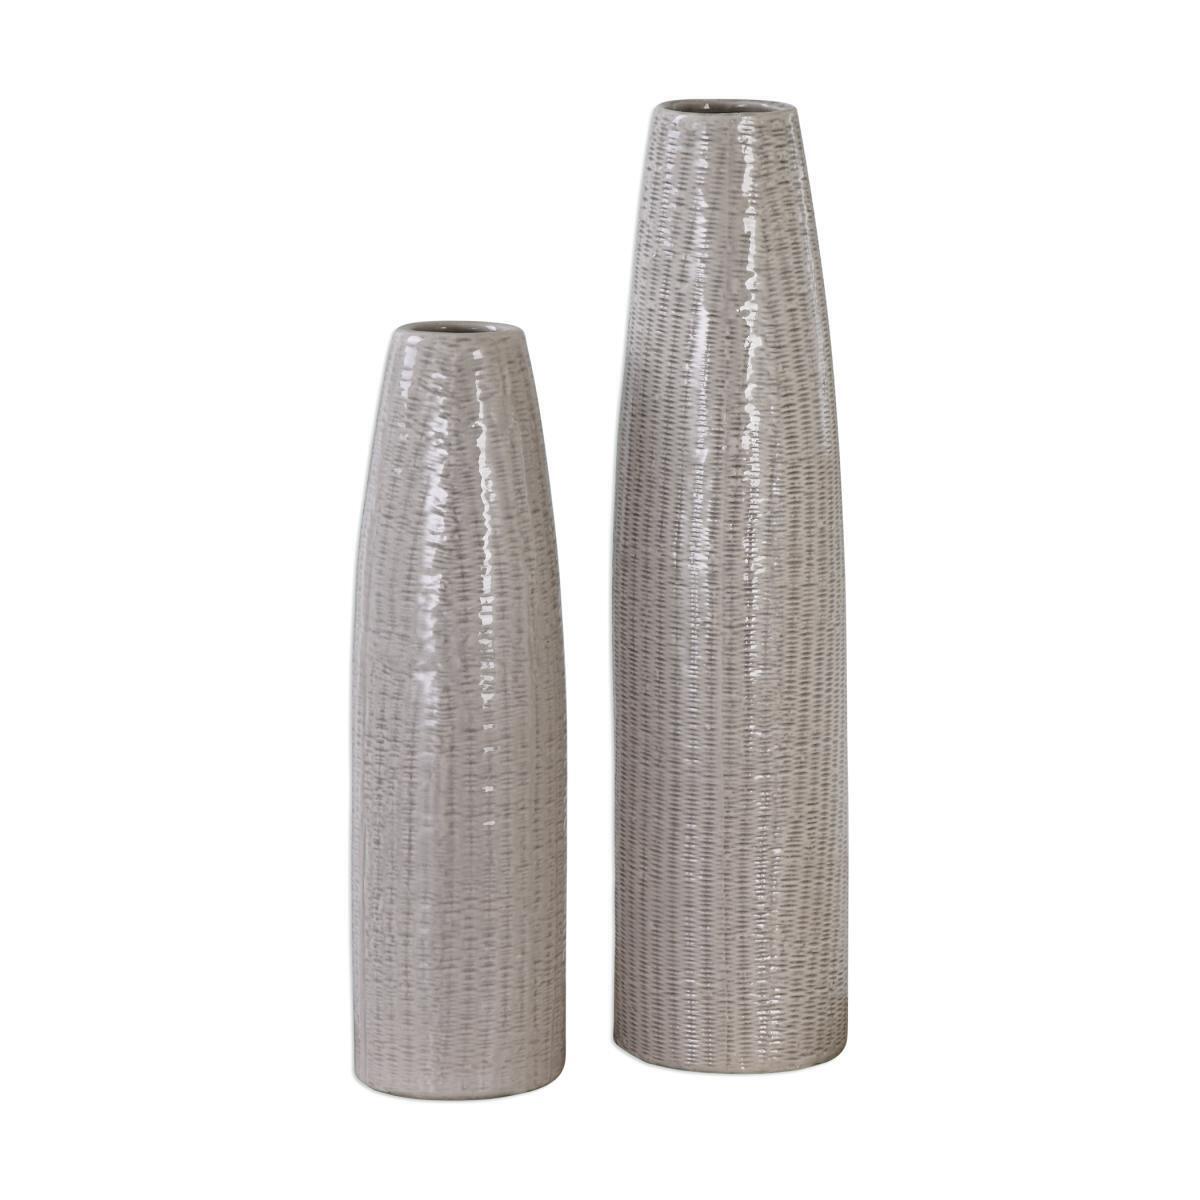 212 Main 20156 Sara Textured Ceramic Vases Set of 2